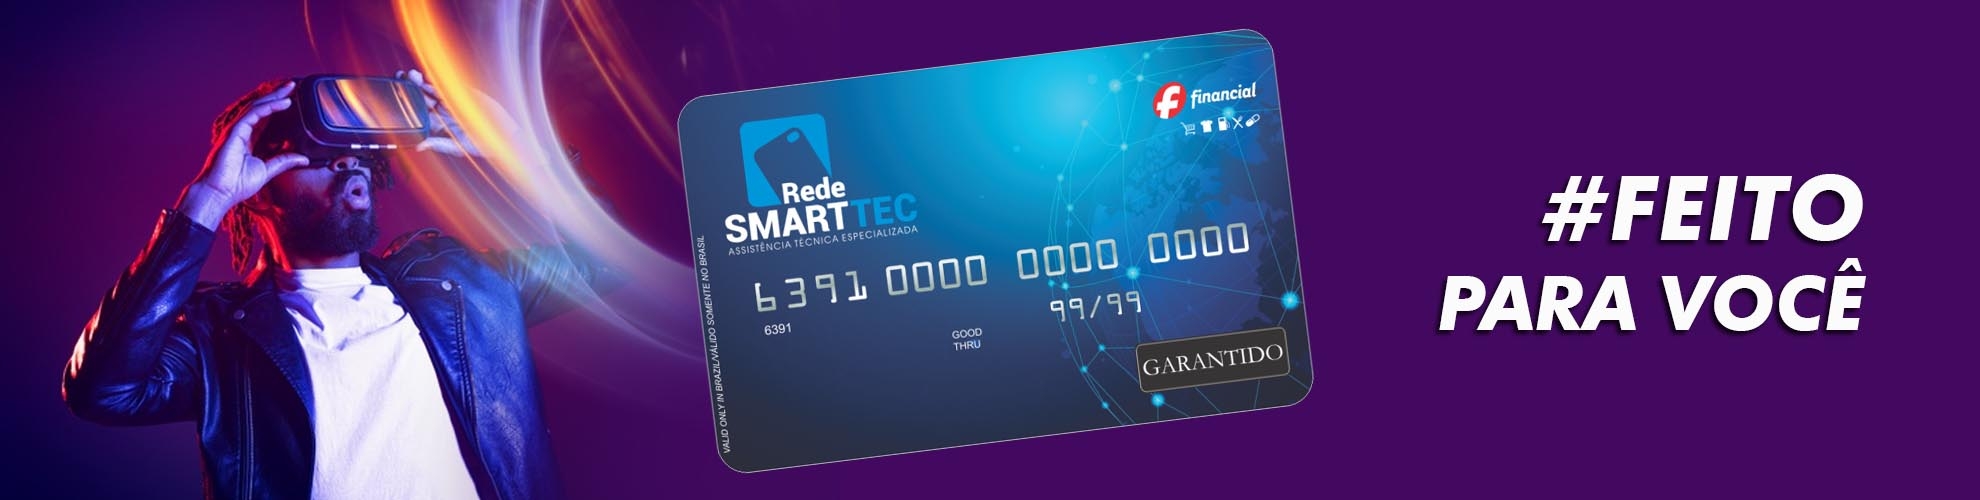 Cartão Rede Smart Tec - Crédito